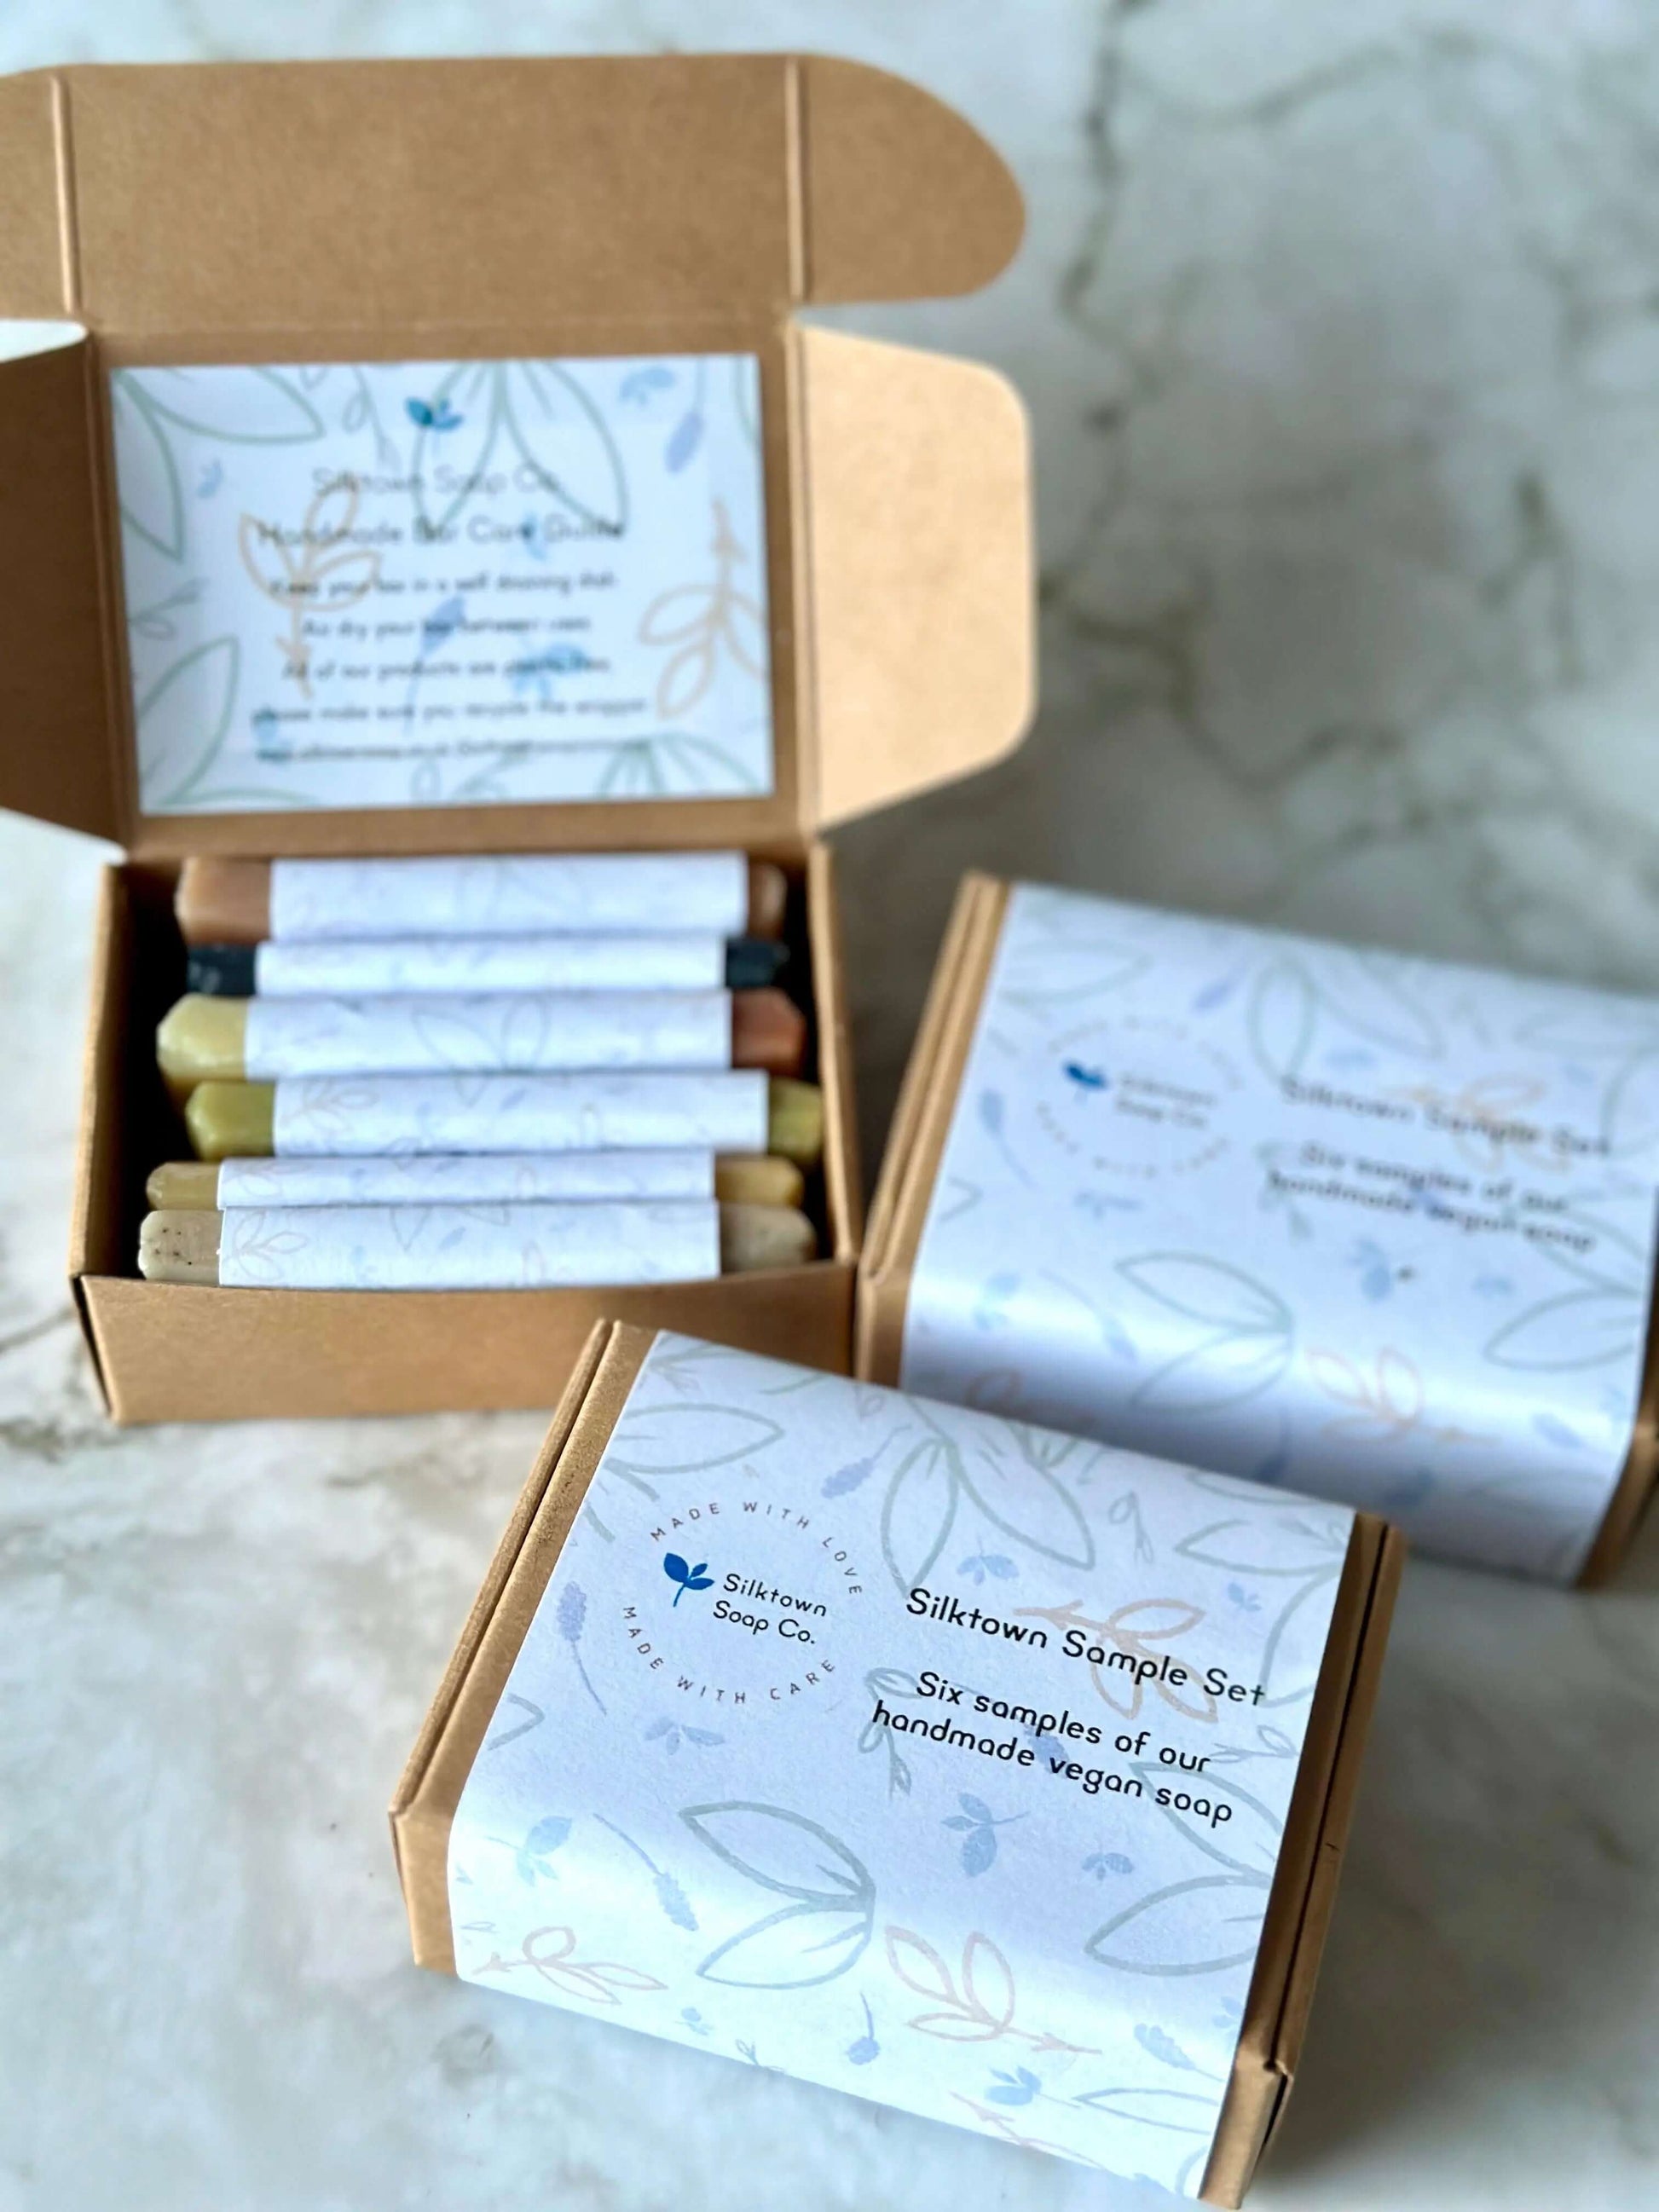 Silktown Soap Sample Box - Silktown Soap Company 